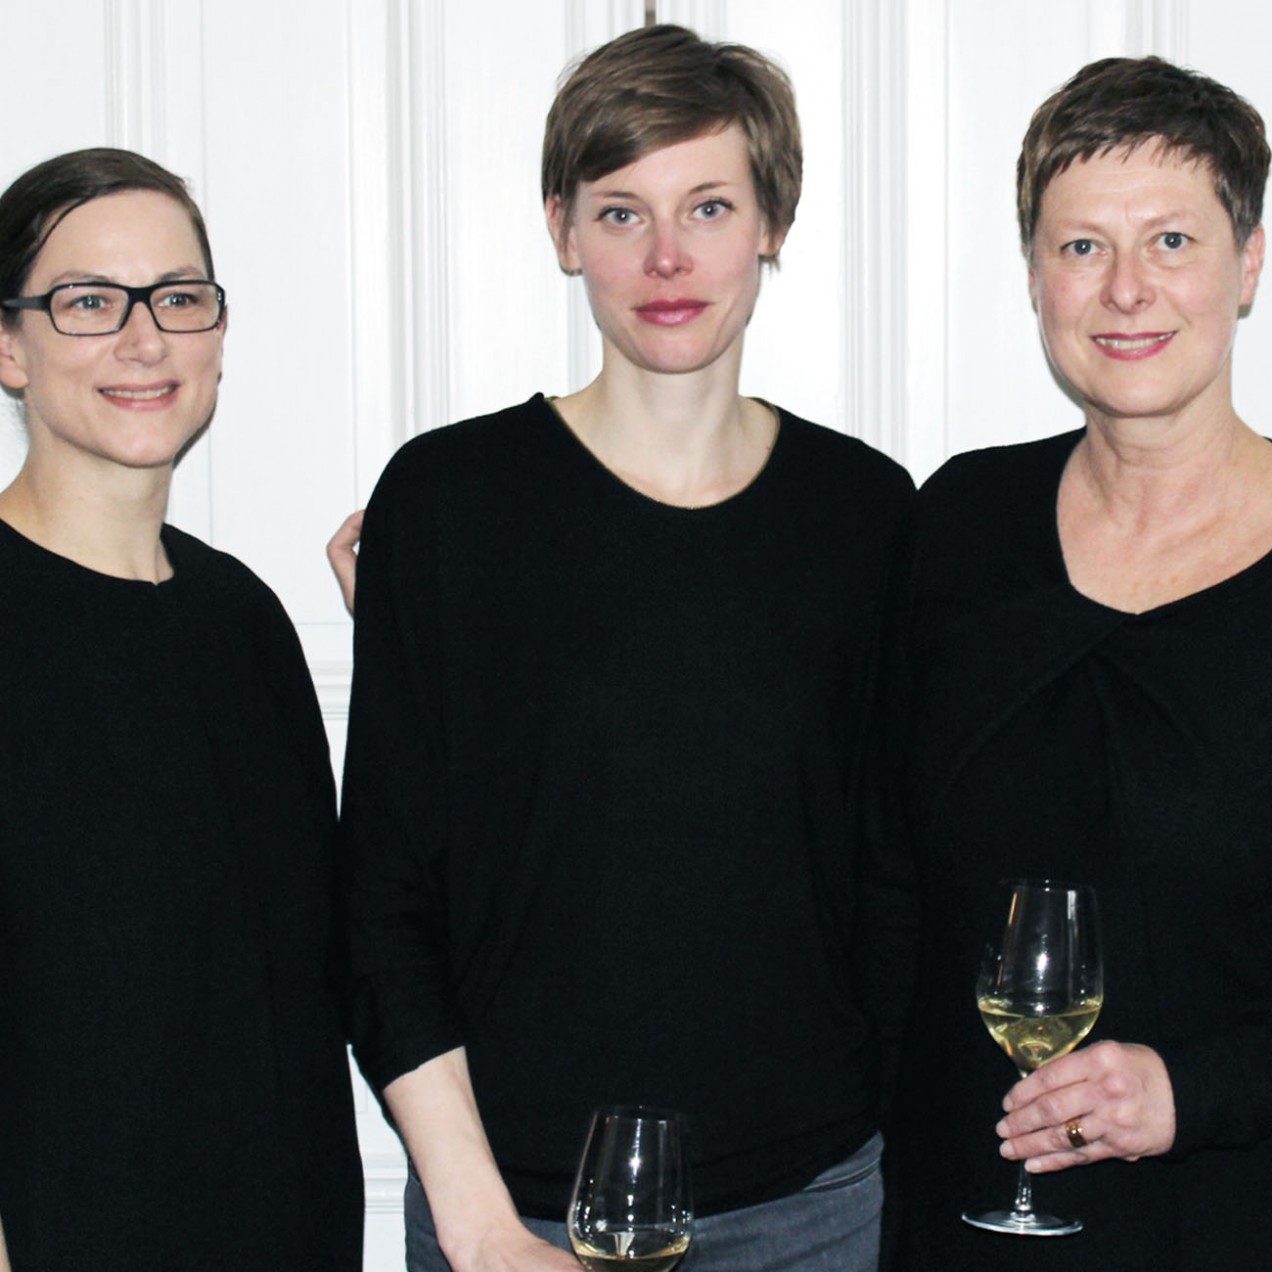 Zum Abschluss noch ein Gruppenfoto von unseren drei Designerinnen; Foto: MKG